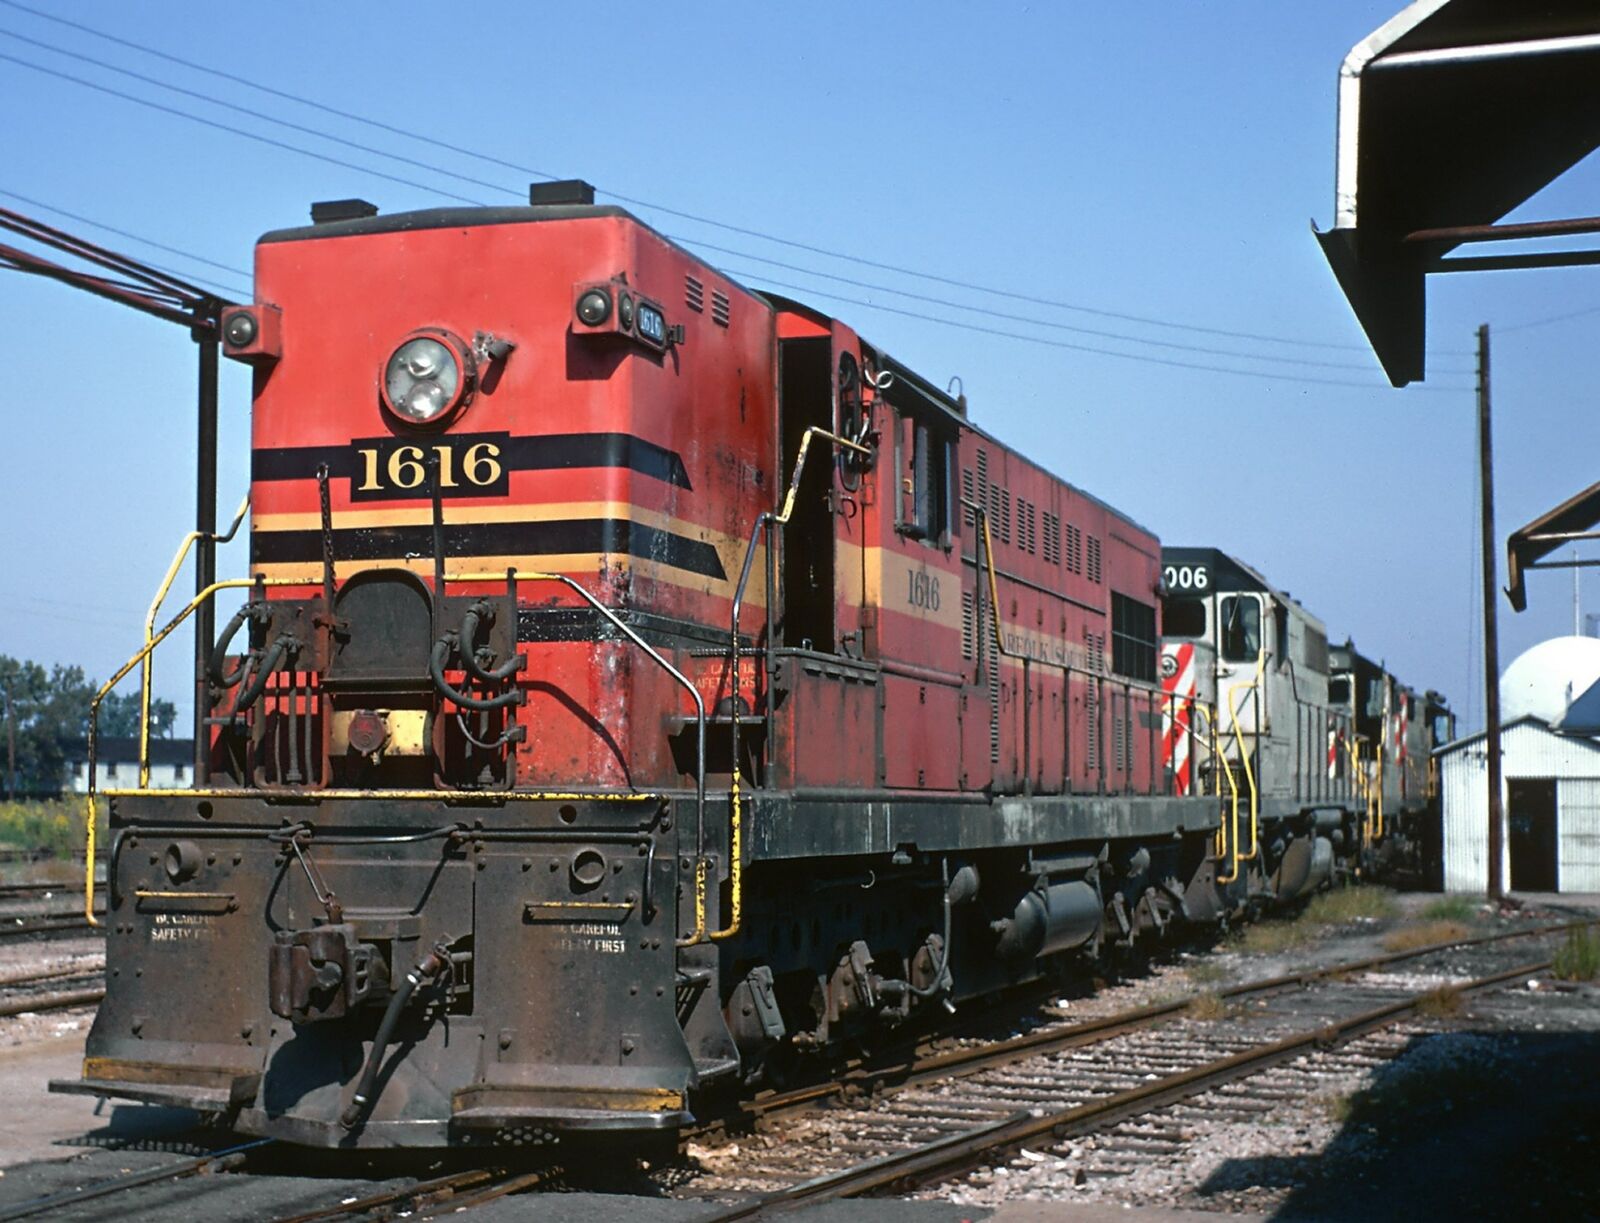 1968 NORFOLK SOUTHERN Baldwin Switcher 8.5X11 Railroad Photo